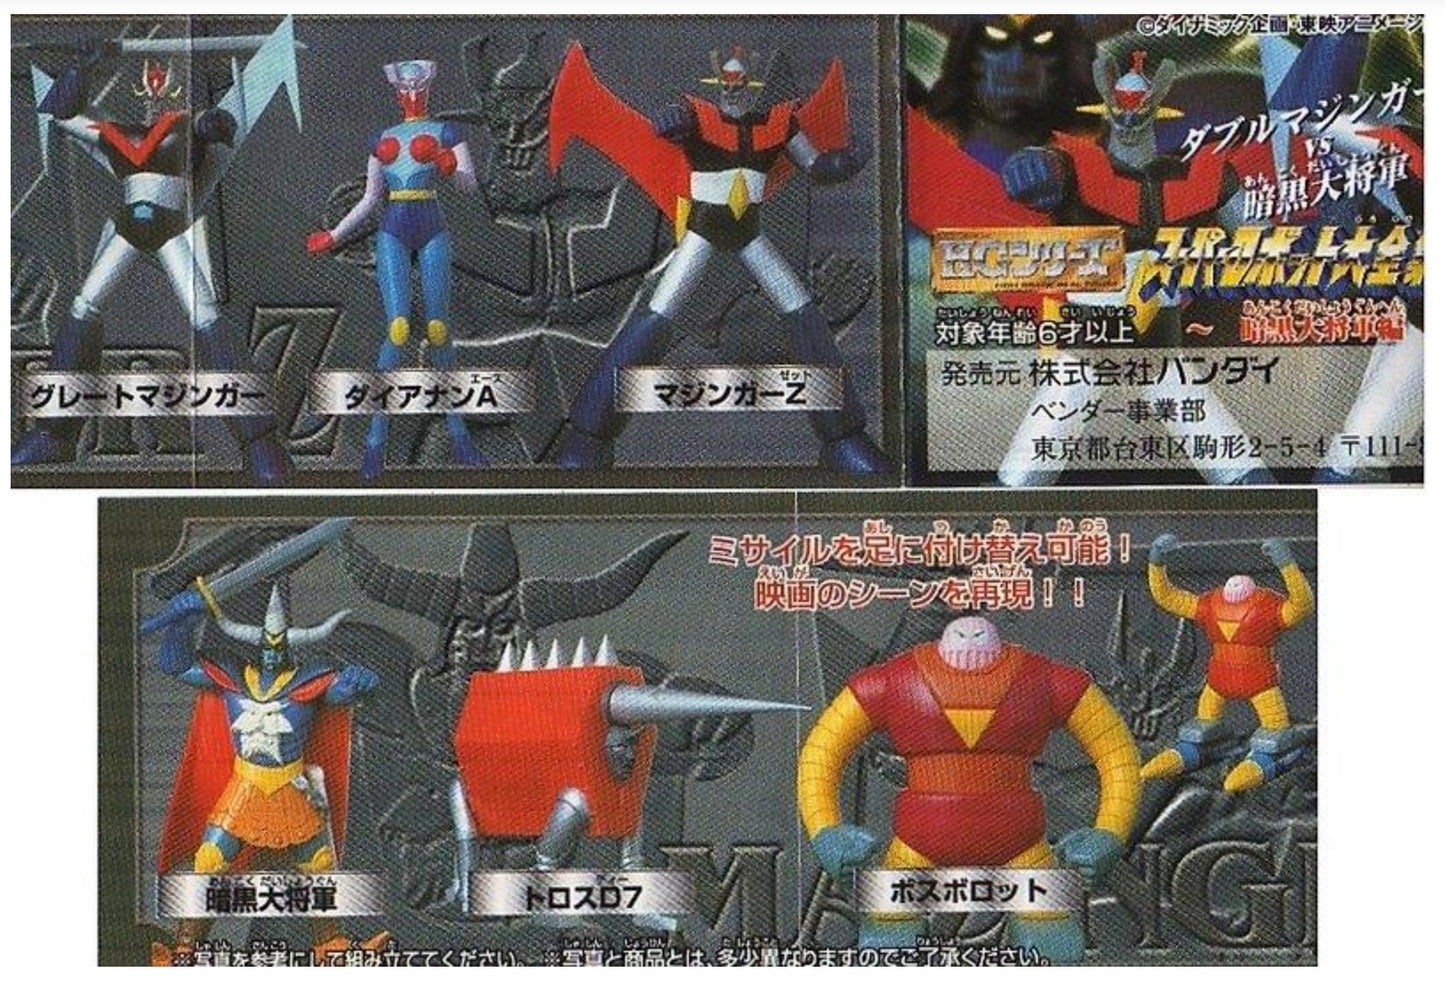 Bandai HG Super Robot Wars SRW Gashapon Complete Collection Part 7 6 Figure Set